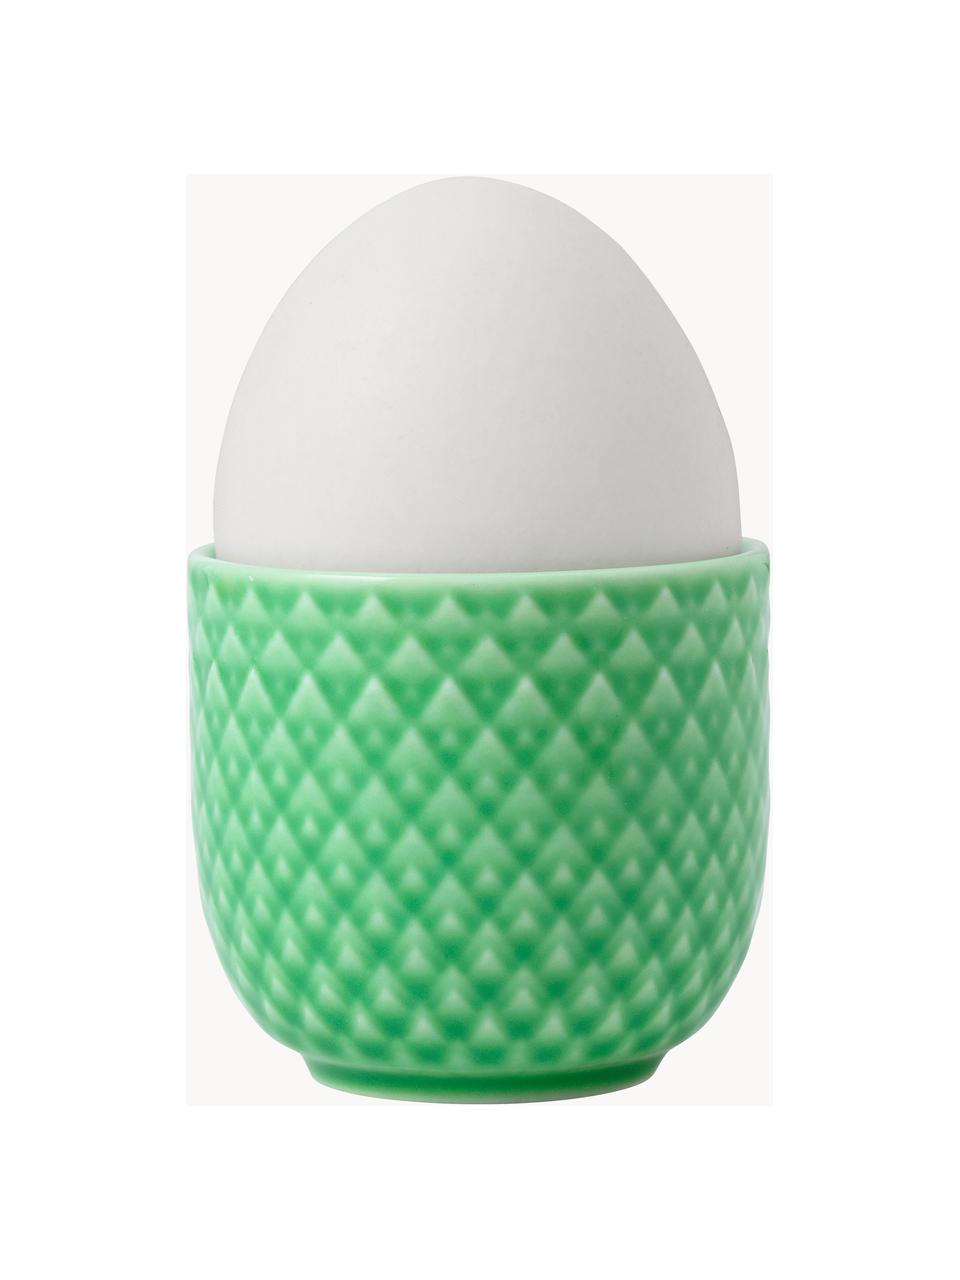 Porcelánové stojany na vajíčka se strukturovaným vzorem Rhombe, 4 ks, Porcelán, Zelená, Š 5 cm, V 5 cm